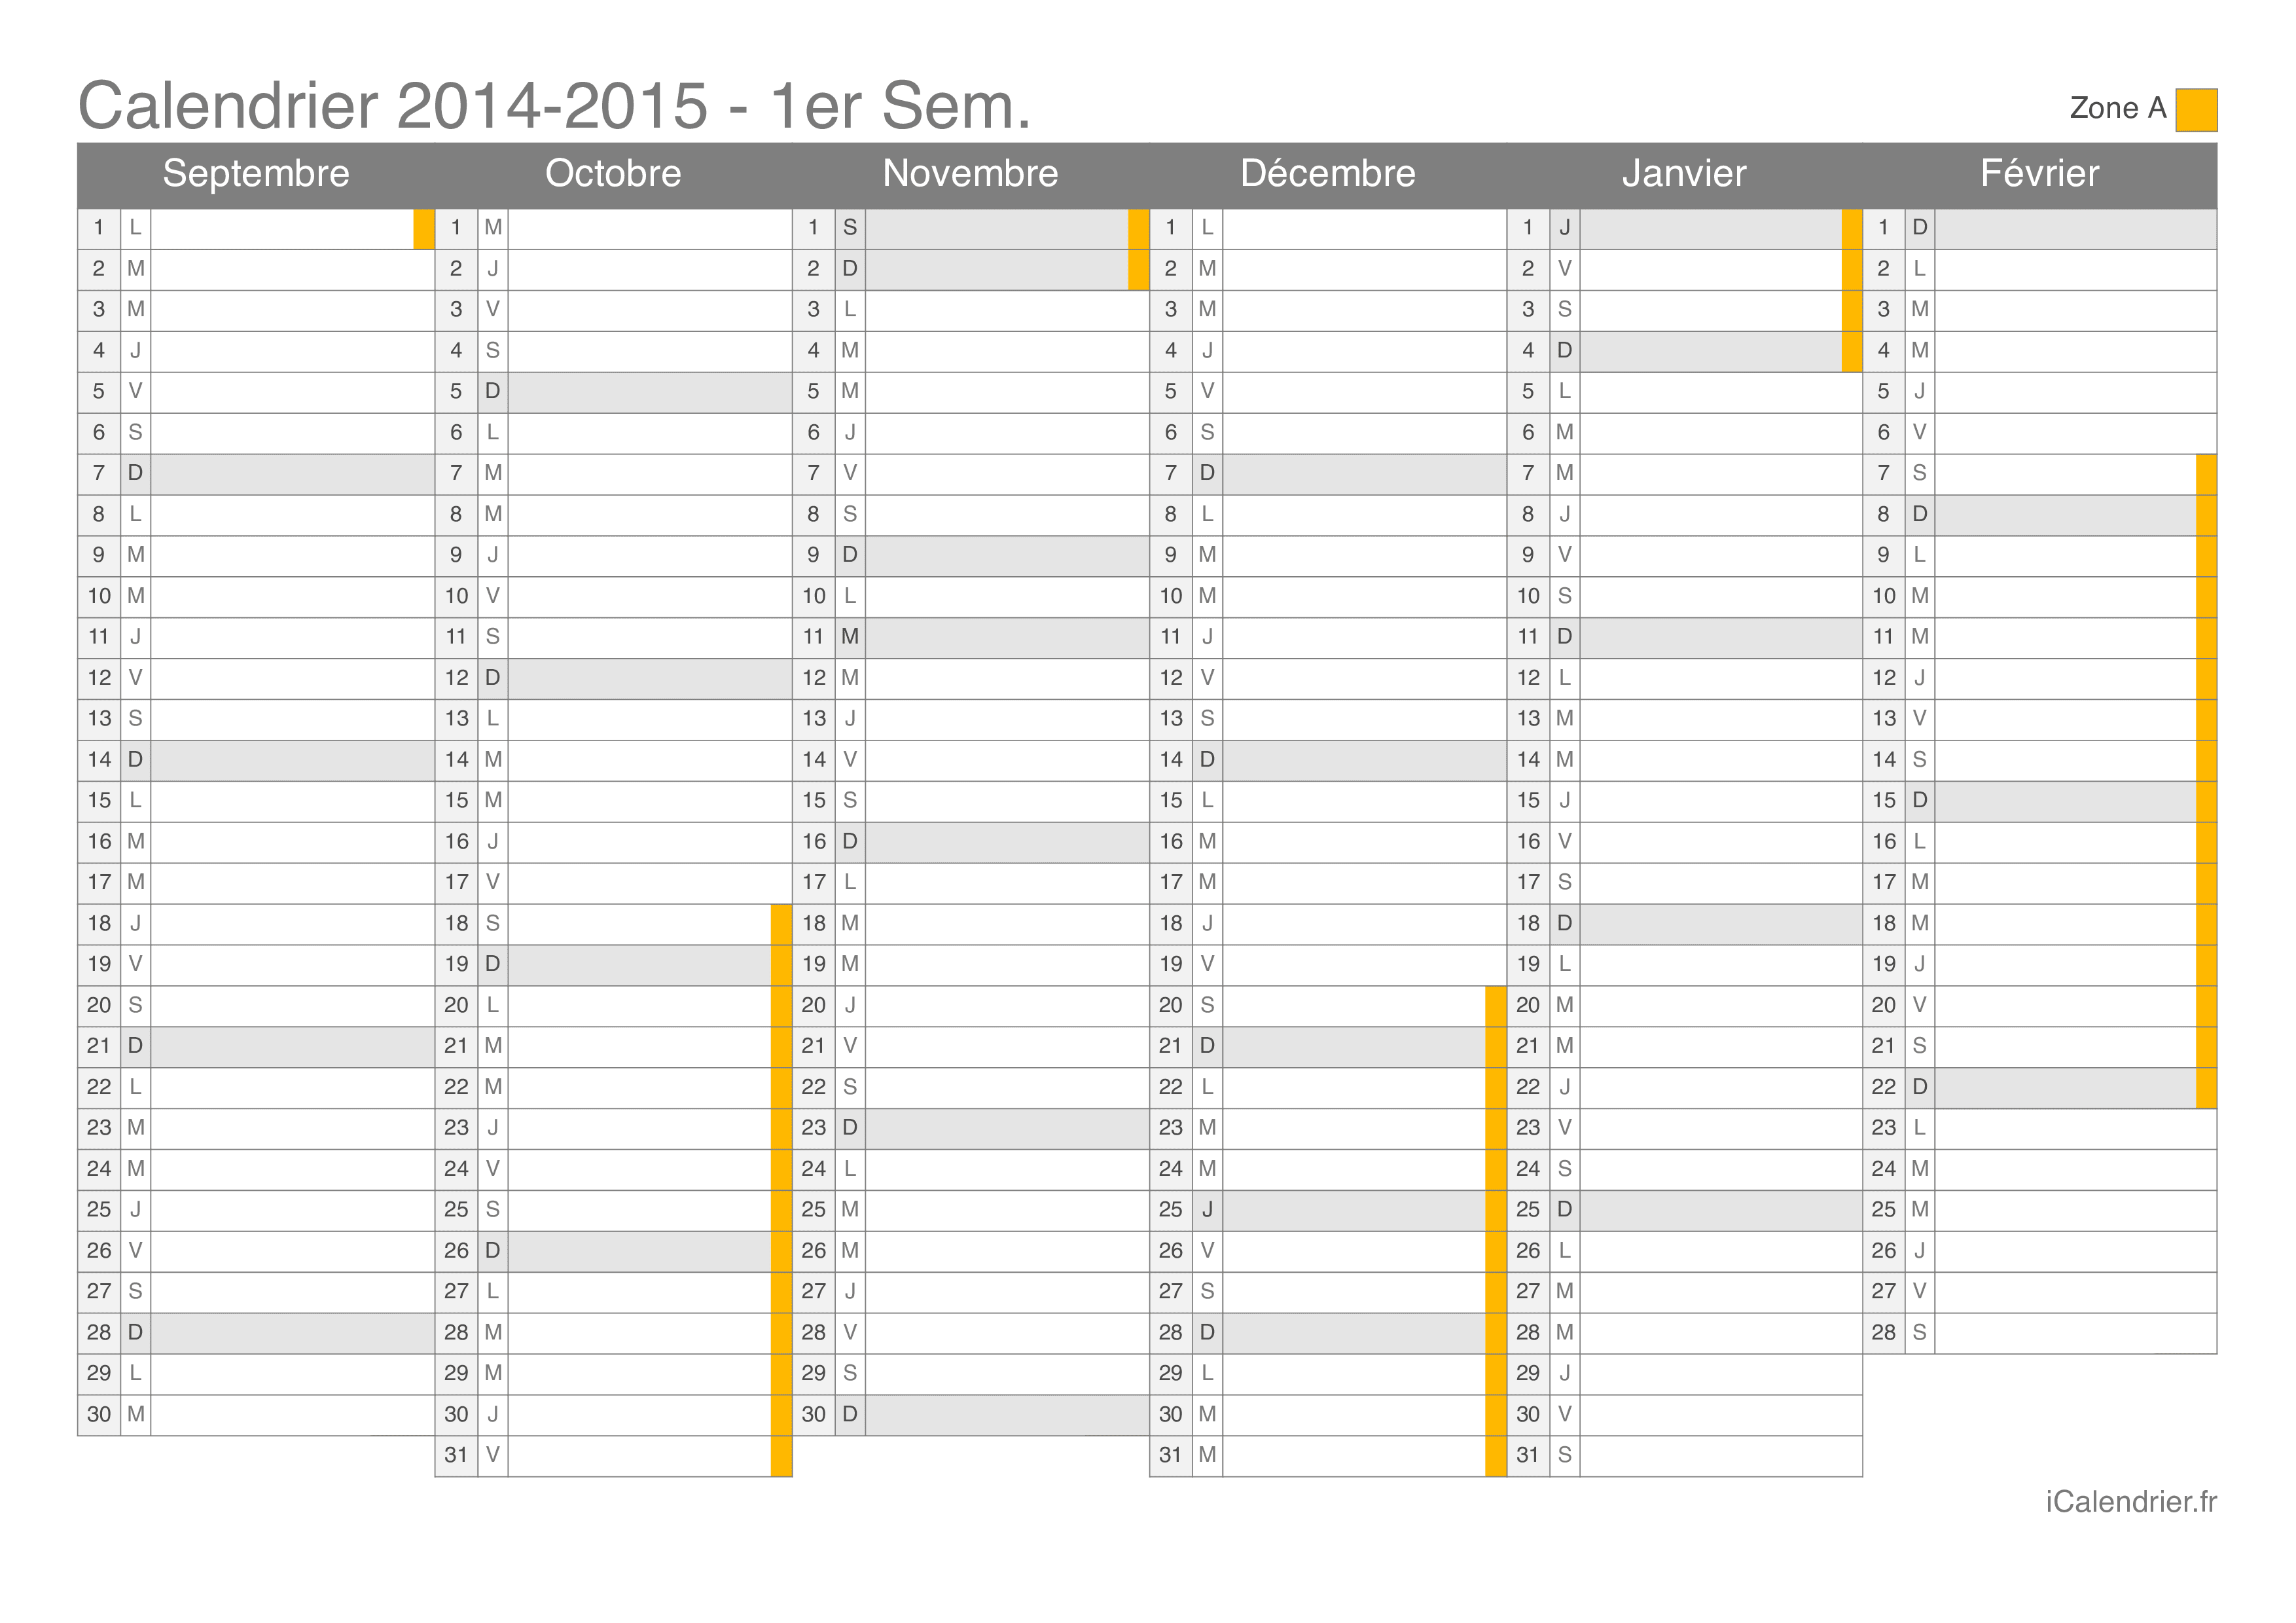 Calendrier des vacances scolaires 2014-2015 par semestre de la zone A